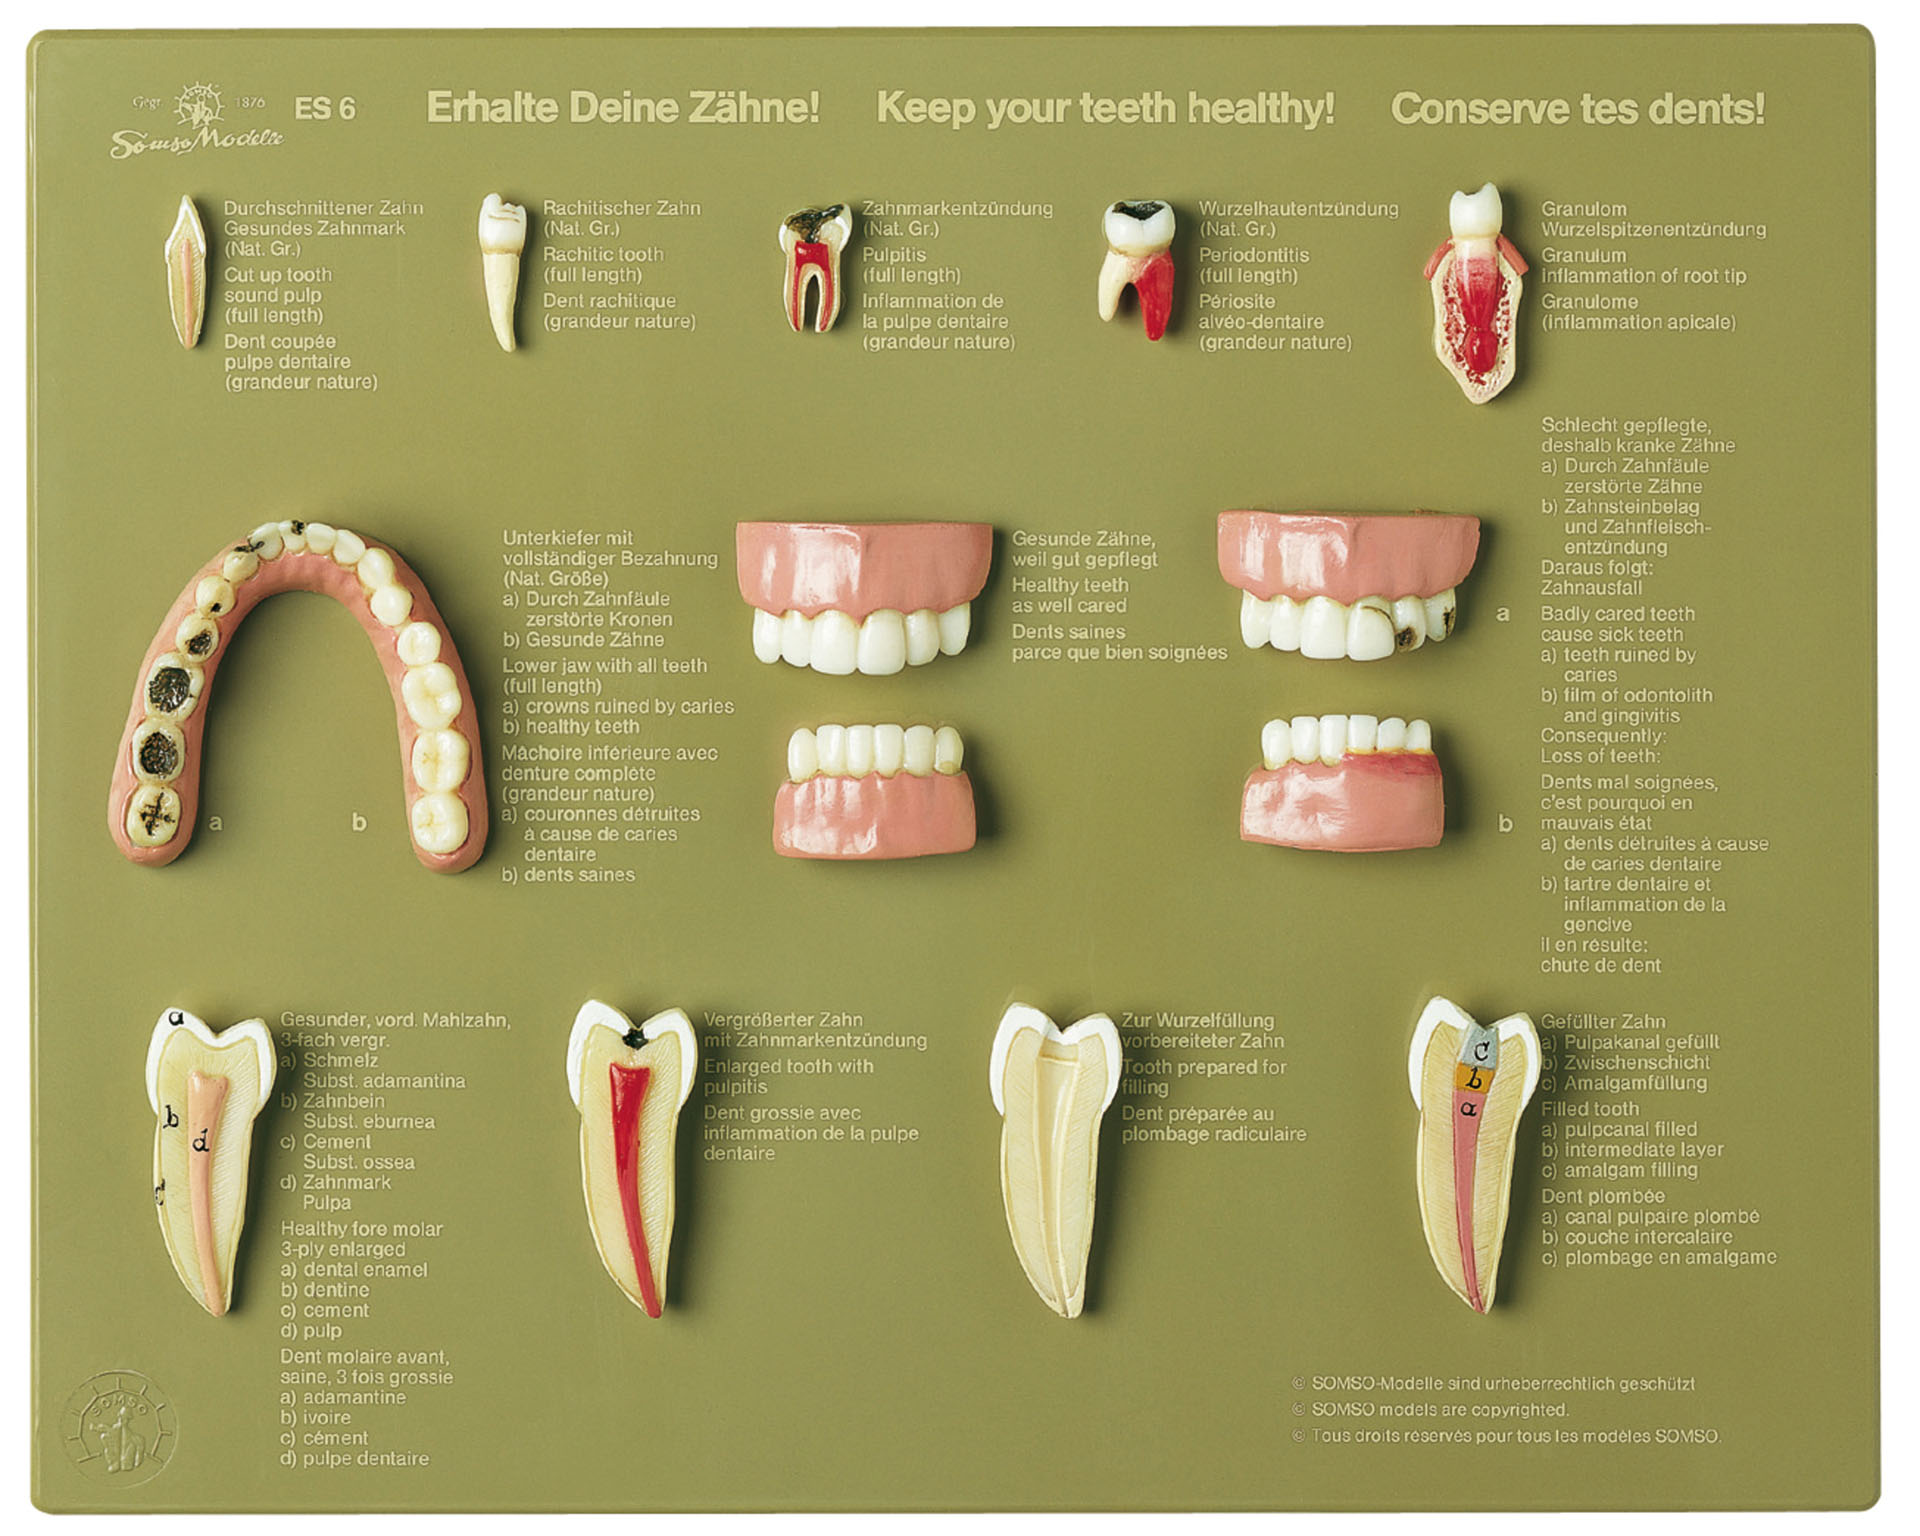 Case of Teeth “Keep Your Teeth Healthy”